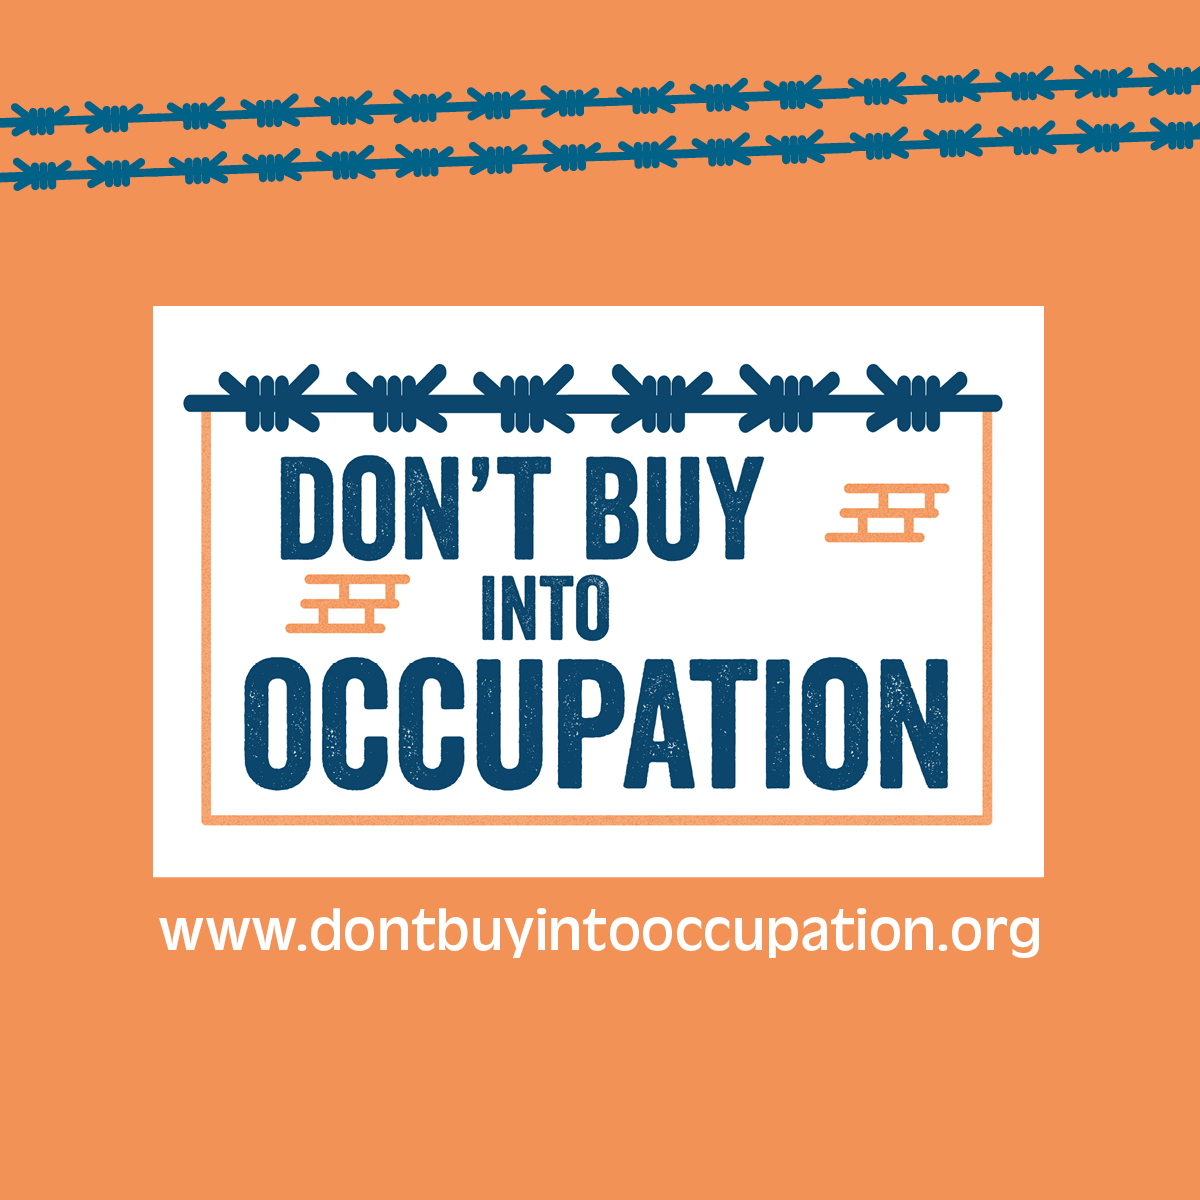 La coalition 'Don't Buy into Occupation' (DBIO)  met en lumière les relations financières entre les entreprises commerciales impliquées dans la colonisation israélienne illégale des TPO et les institutions financières européennes (IF). #DontBuyIntoOccupation  #StopArmingIsrael